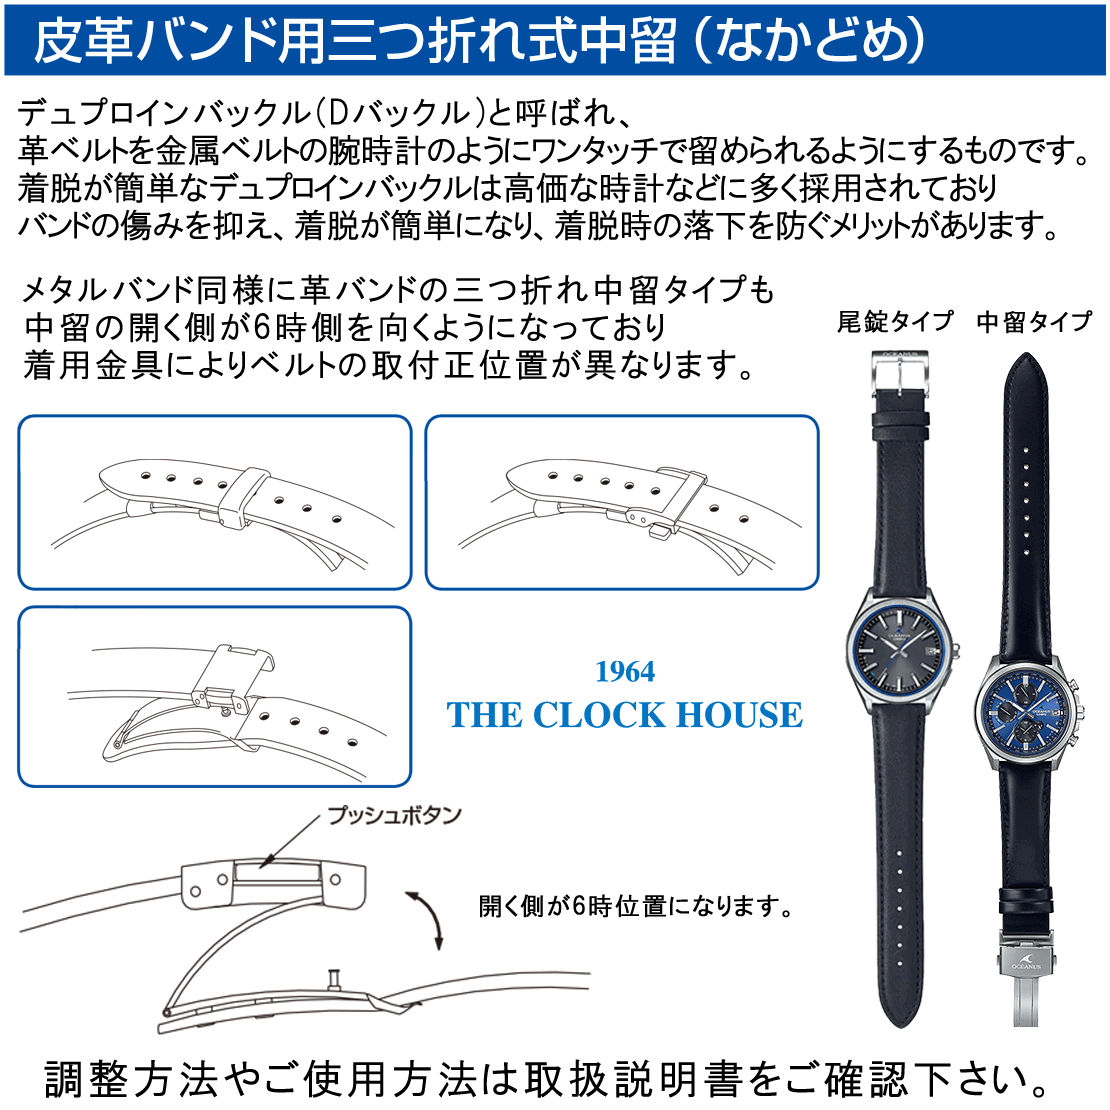 セイコー プレザージュ カクテルタイム スタアバー コラボレーション 限定モデル Tokyo Magic Hour パープルサンセット SARY239 メンズ 腕時計 機械式 メカニカル